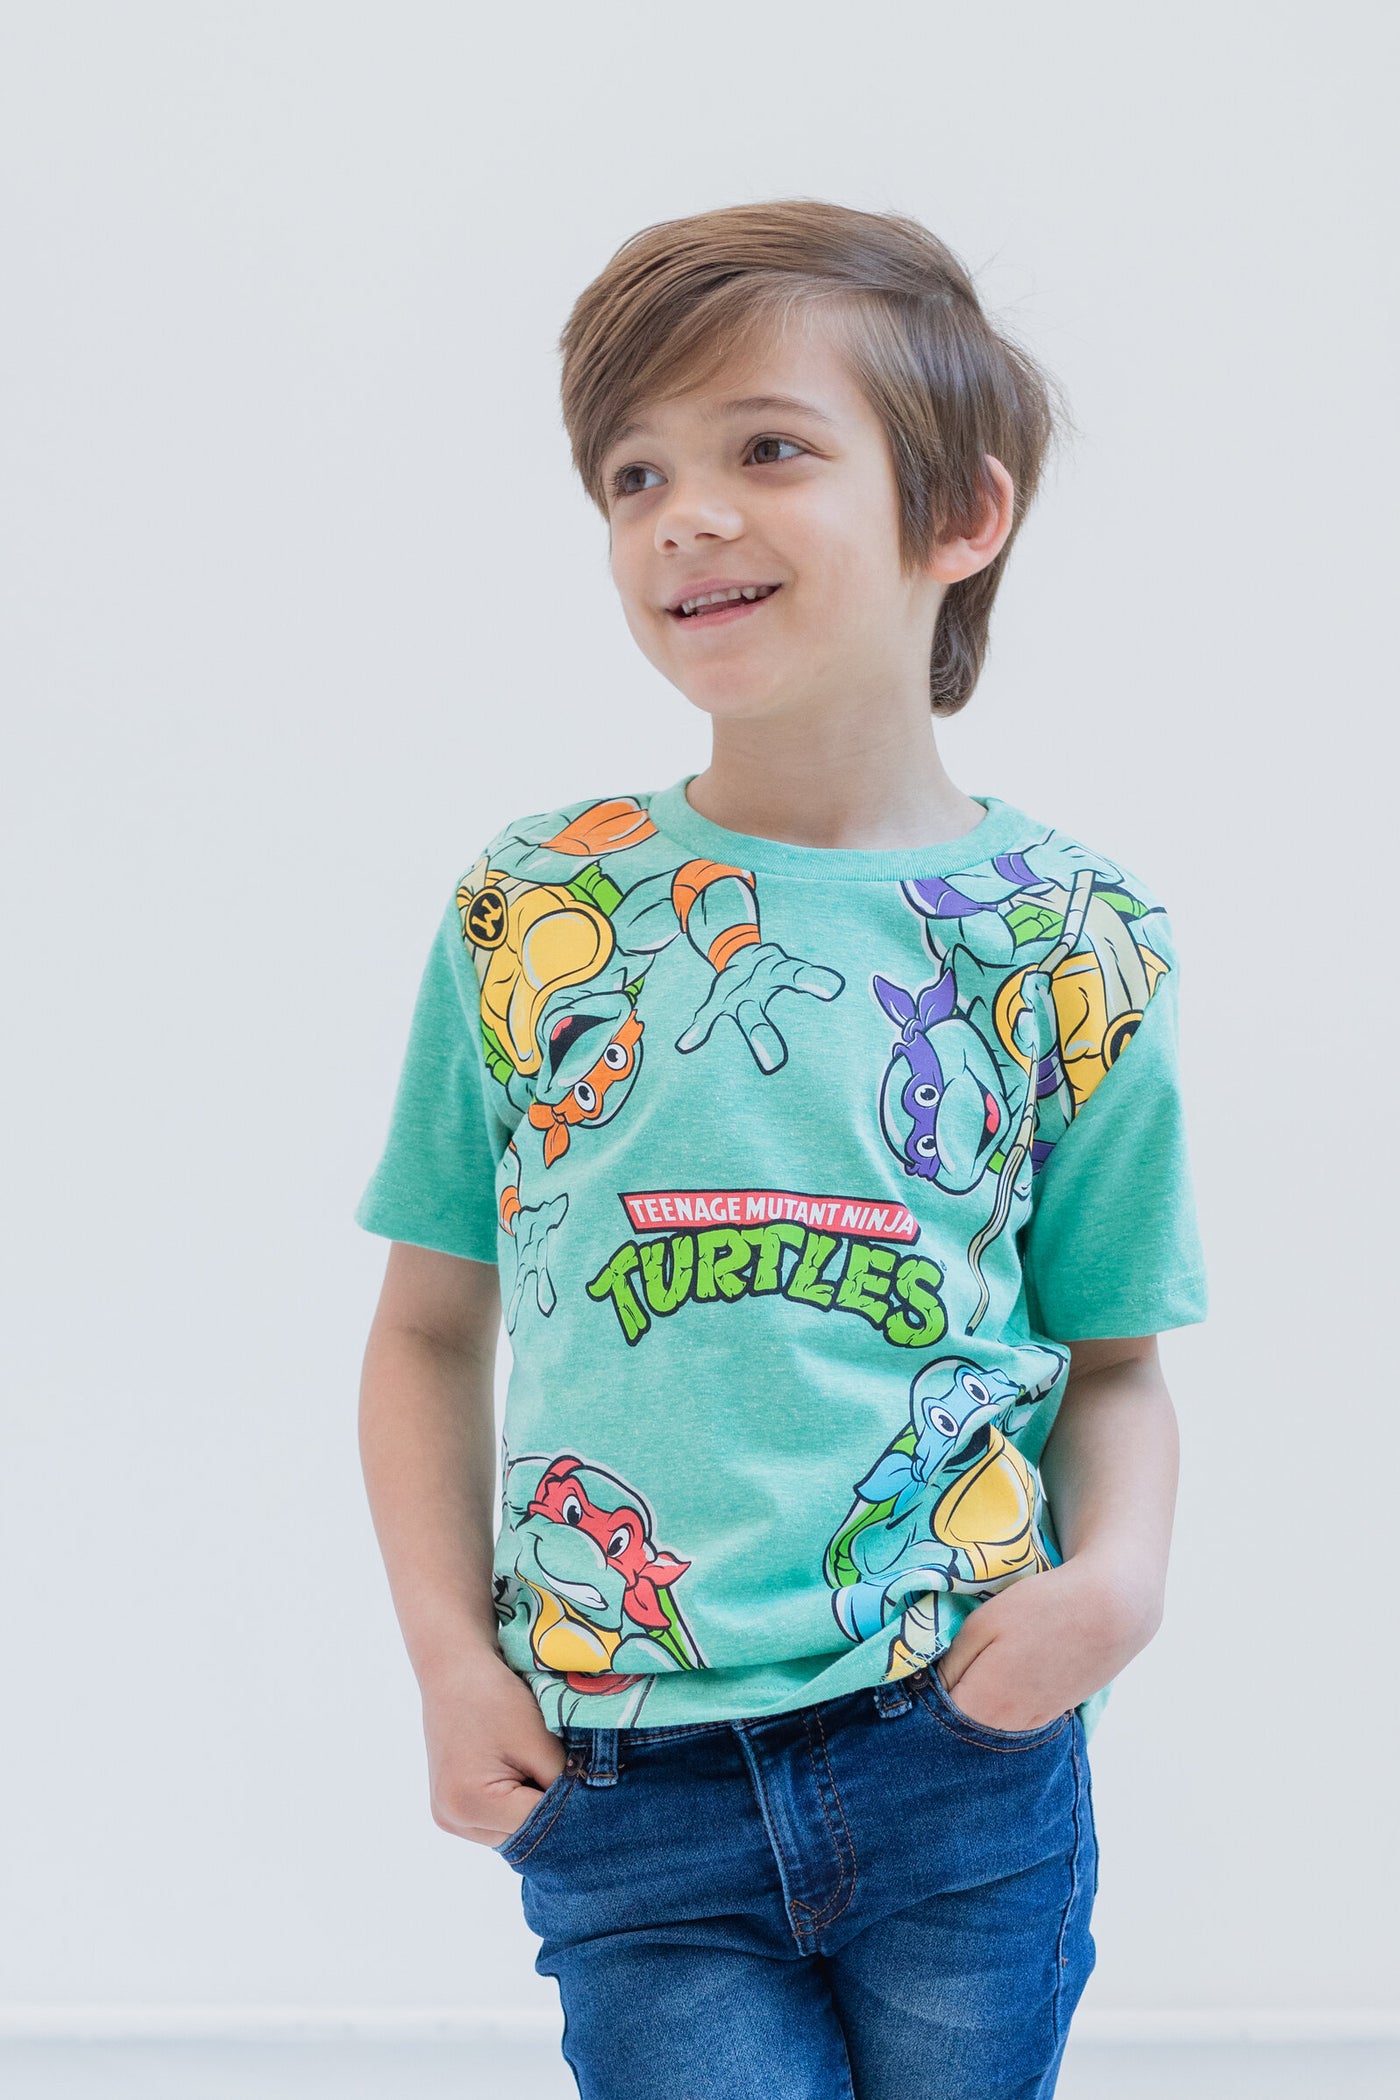 Teenage Mutant Ninja Turtles 3 Pack Graphic T-Shirt